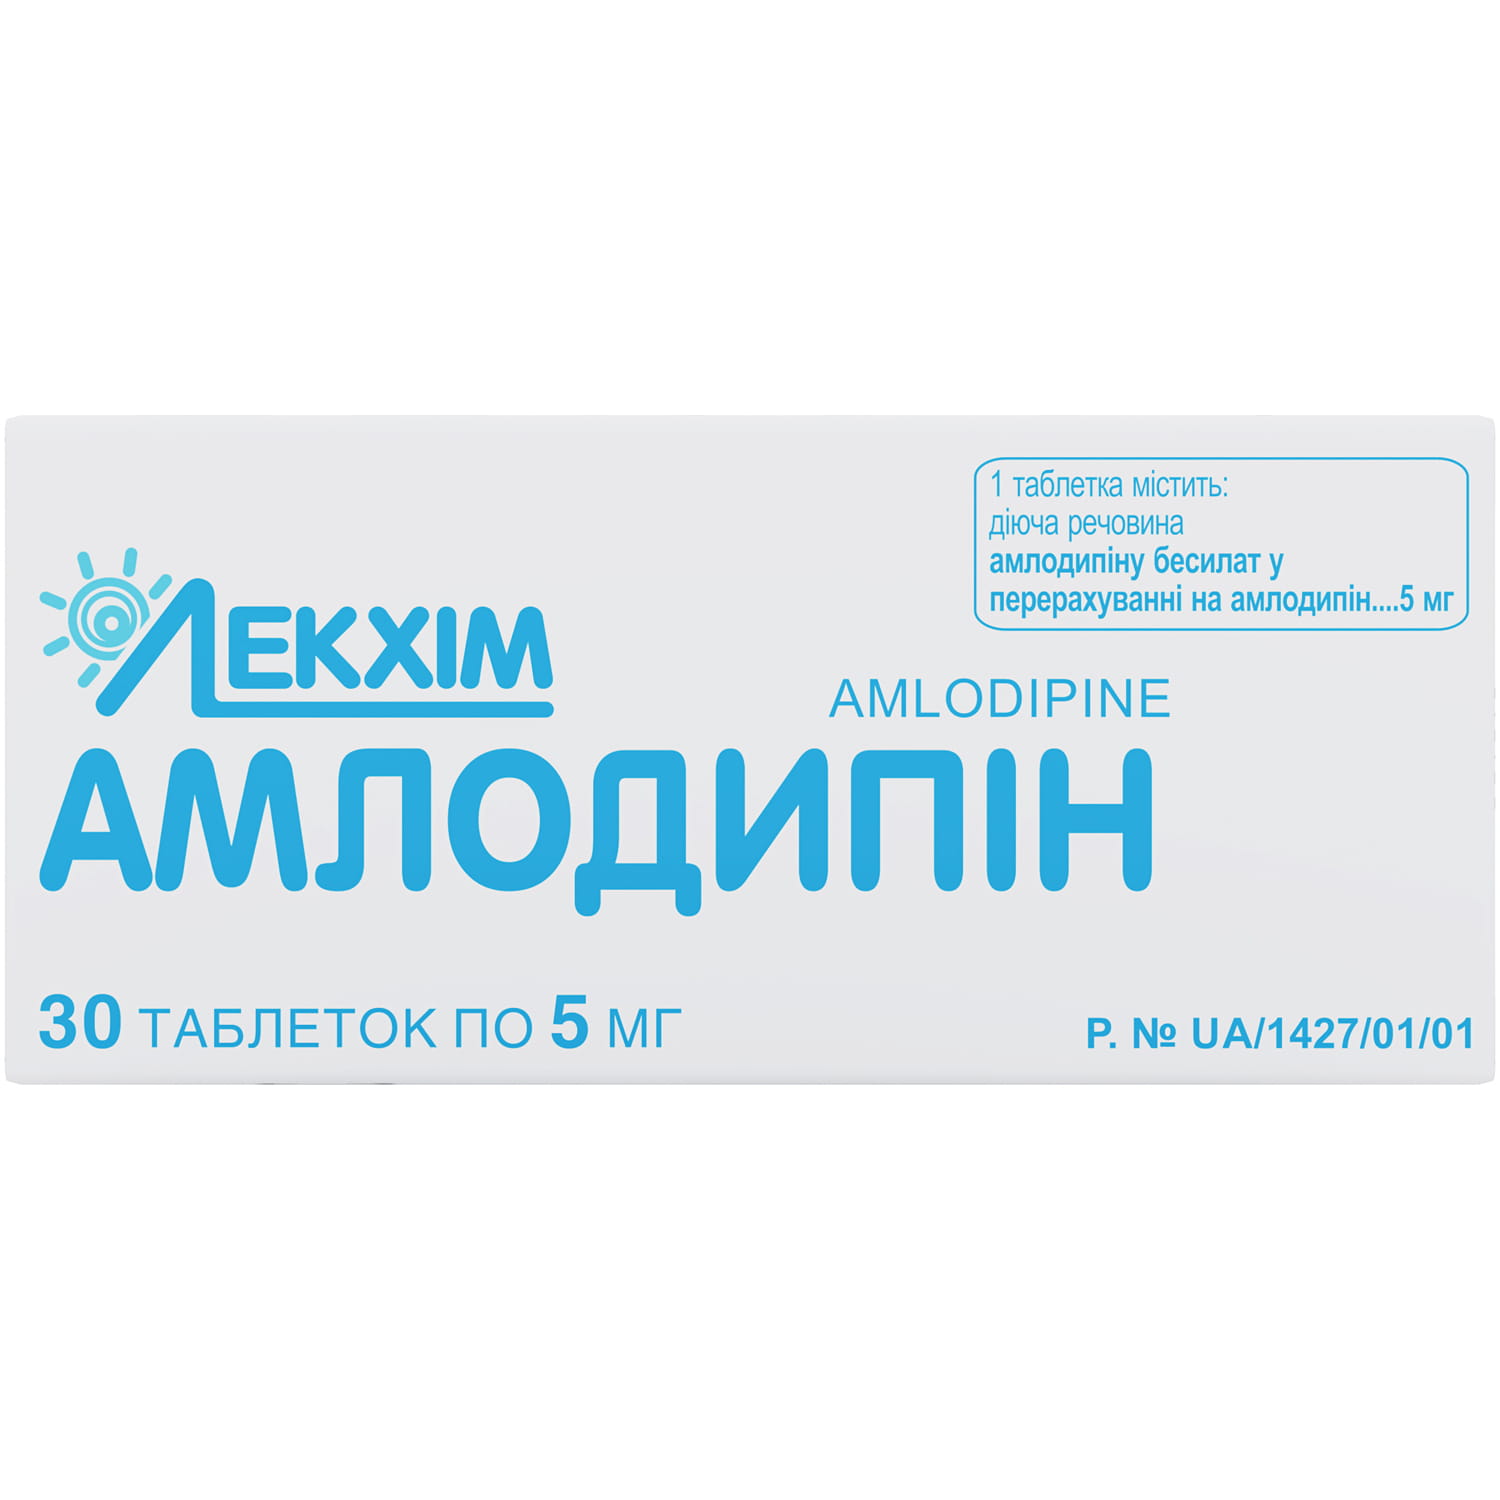 Амлодипінтаблеткипо5мг3блістерапо10шт(4820022240767)Технолог(Україна)-інструкція,купитизанизькоюціноювУкраїні|Аналоги,відгуки-МІСАптека9-1-1